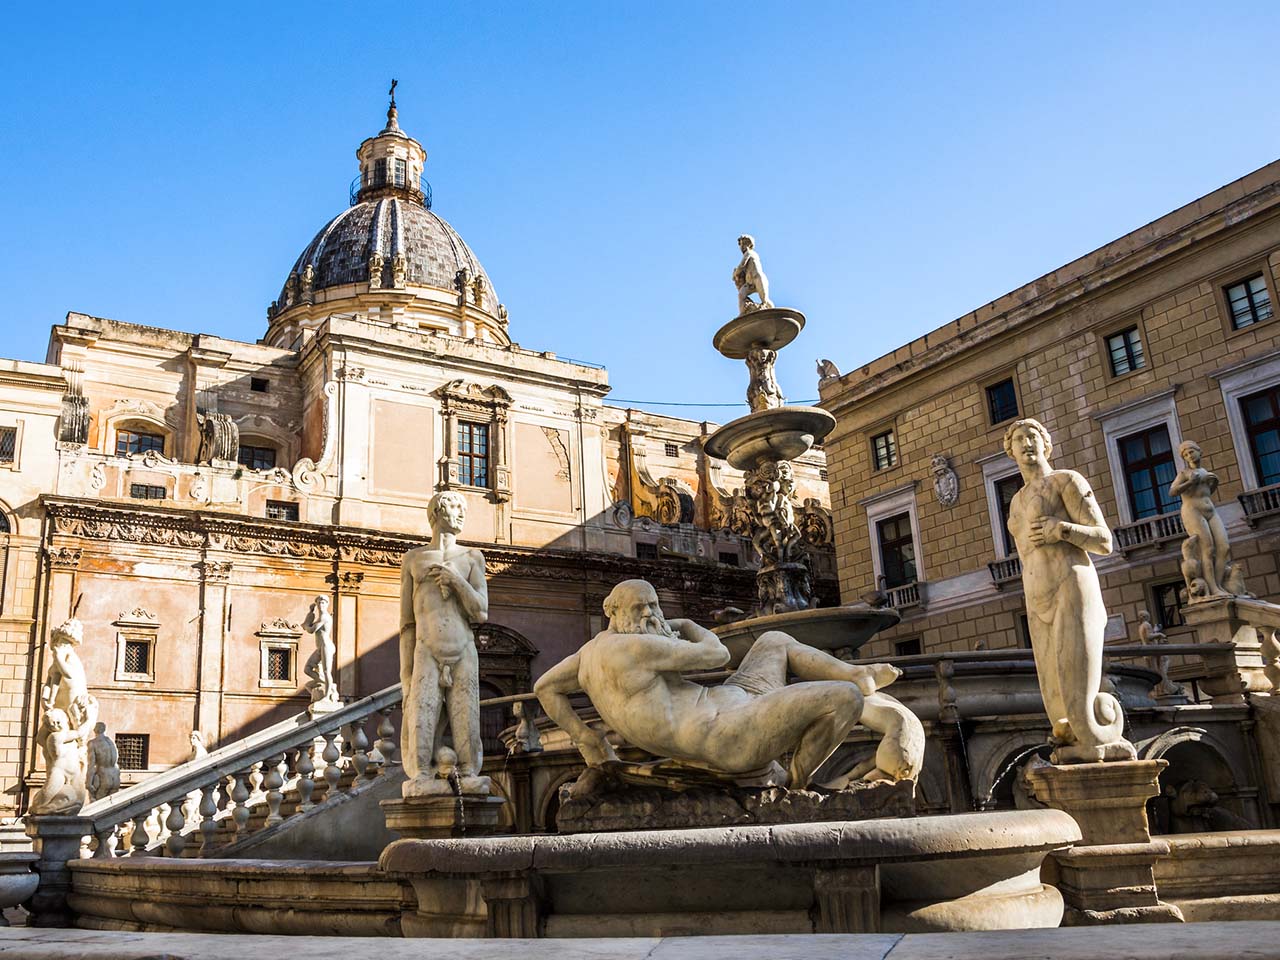 statues of the Fontana Pretoria in Piazza della Vergona in Palermo